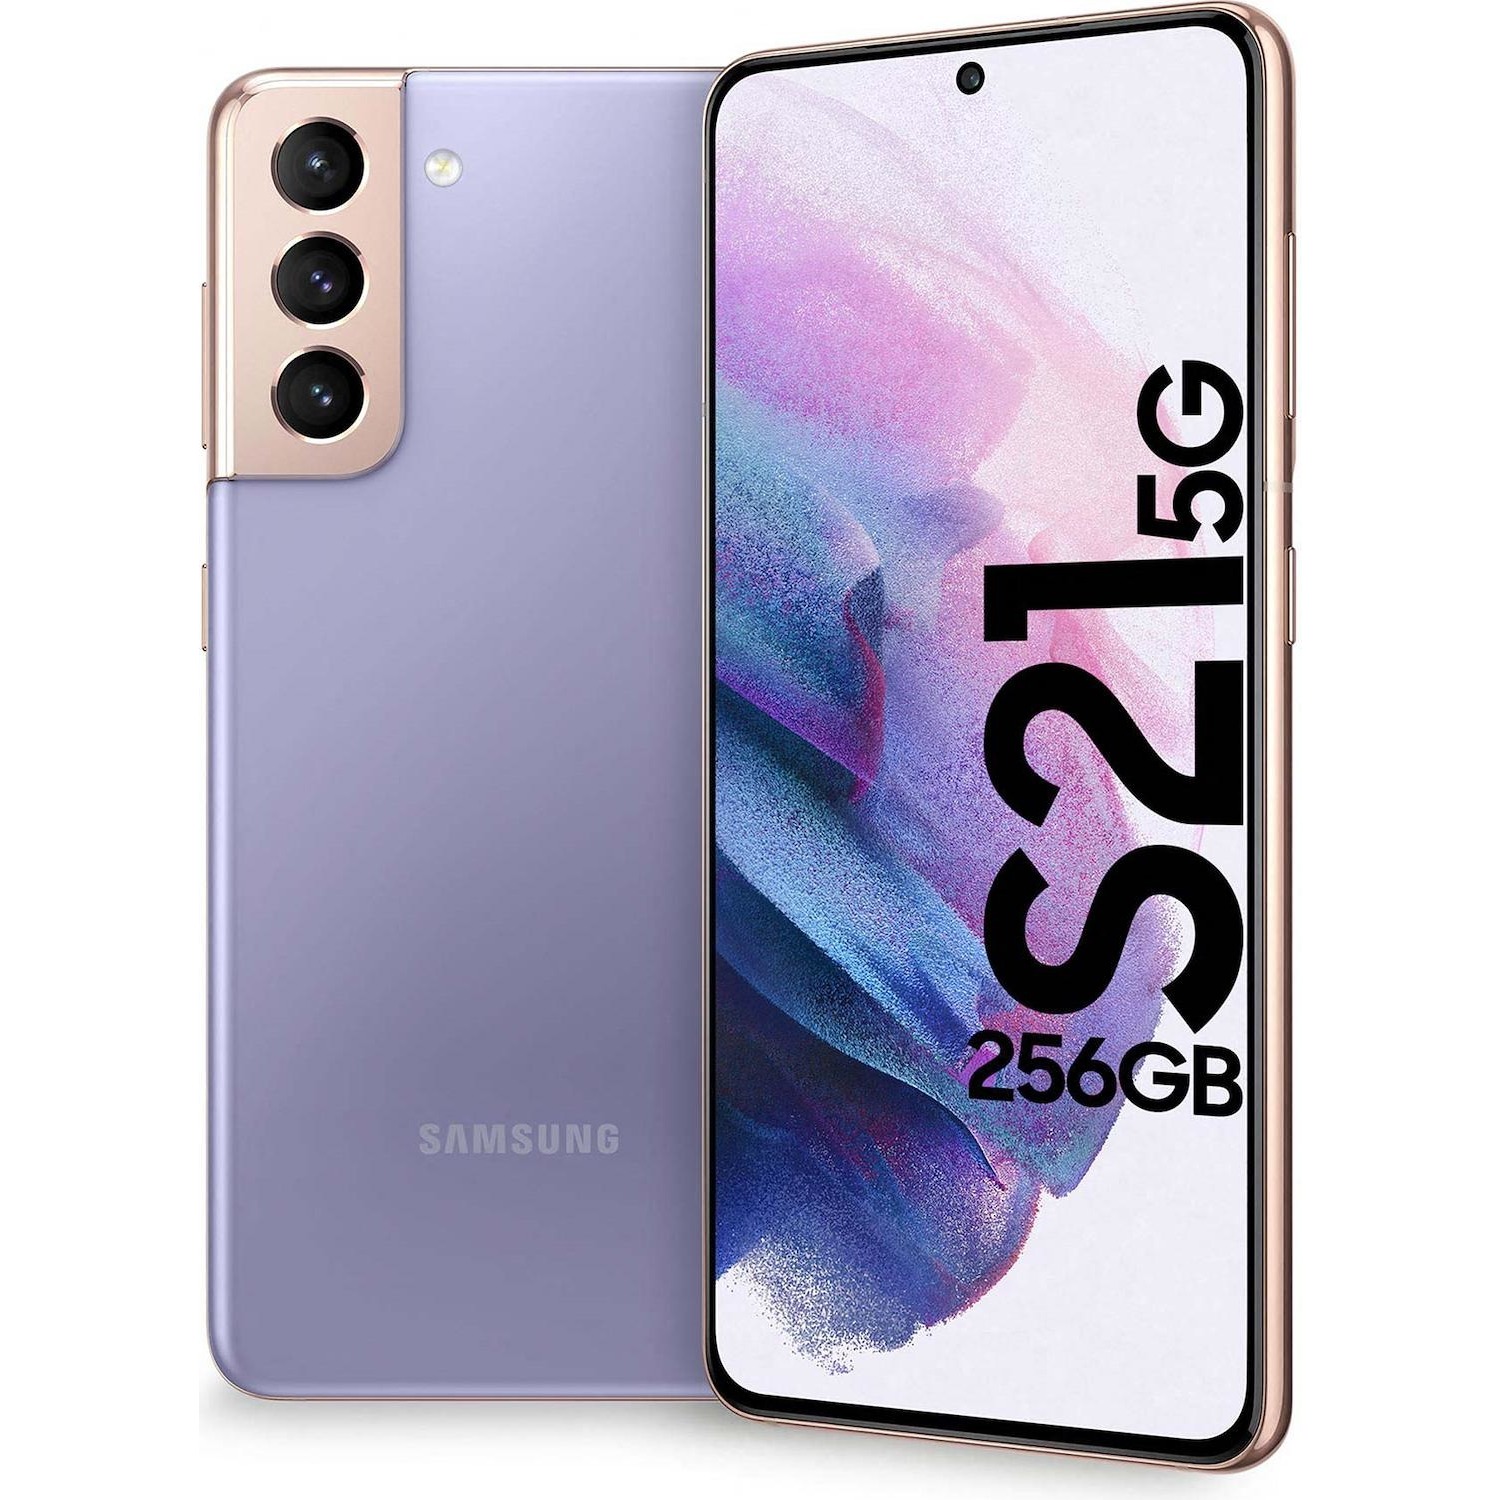 Immagine per Smartphone Samsung Galaxy S21 256GB violet viola da DIMOStore